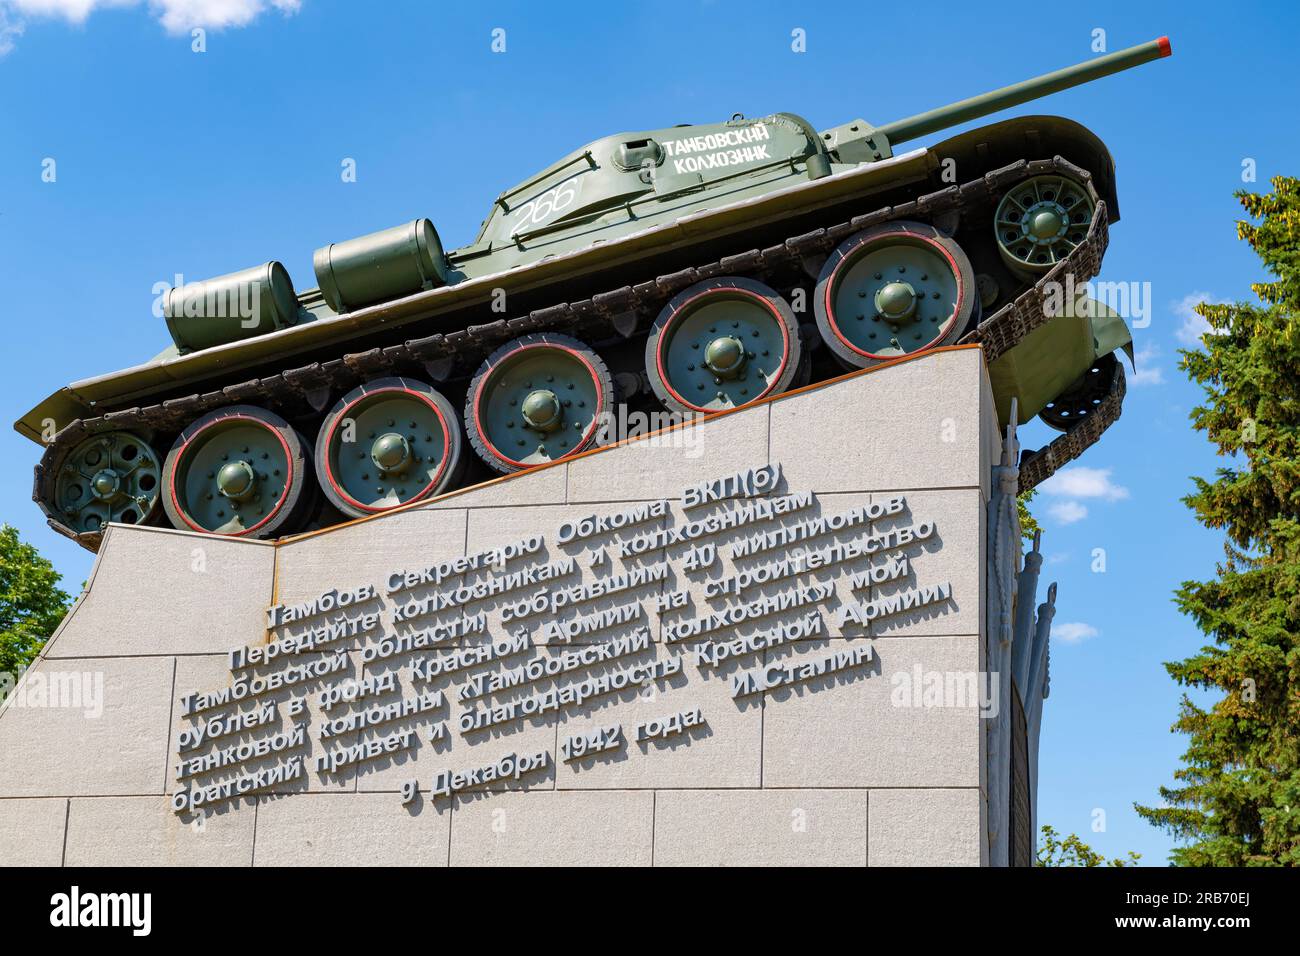 TAMBOV, RUSSIA - JUNE 03, 2023: Monument 'Tank T-34 'Tambov Collective Farmer' close-up on a sunny June day Stock Photo